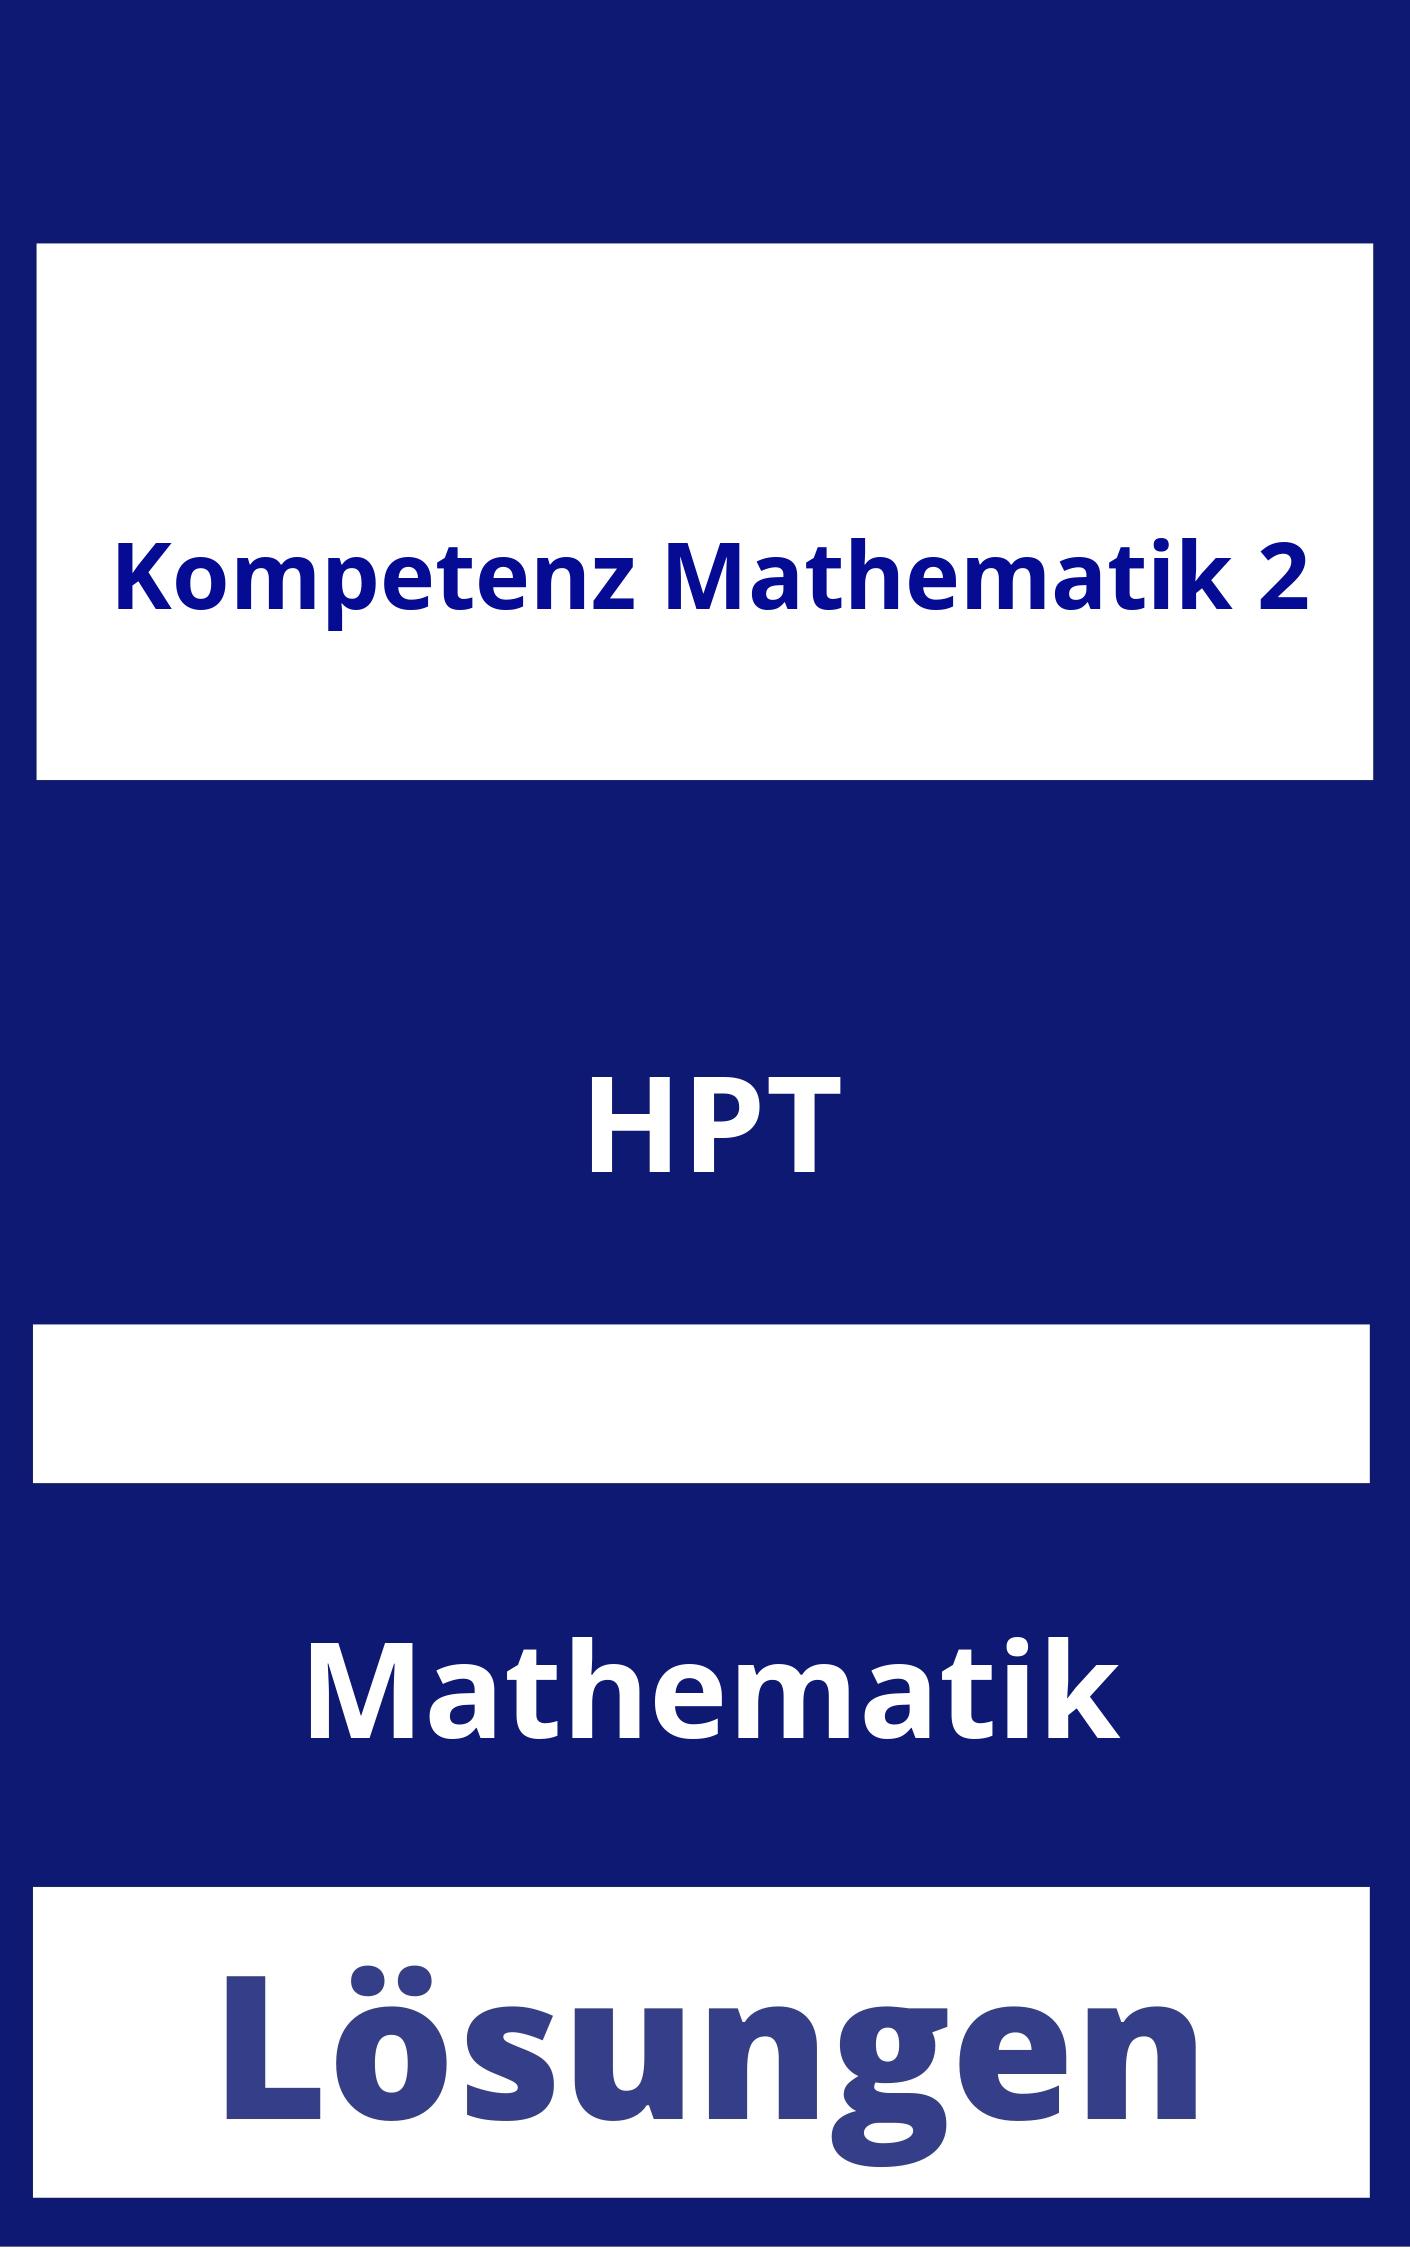 Kompetenz Mathematik 2 Lösungen PDF